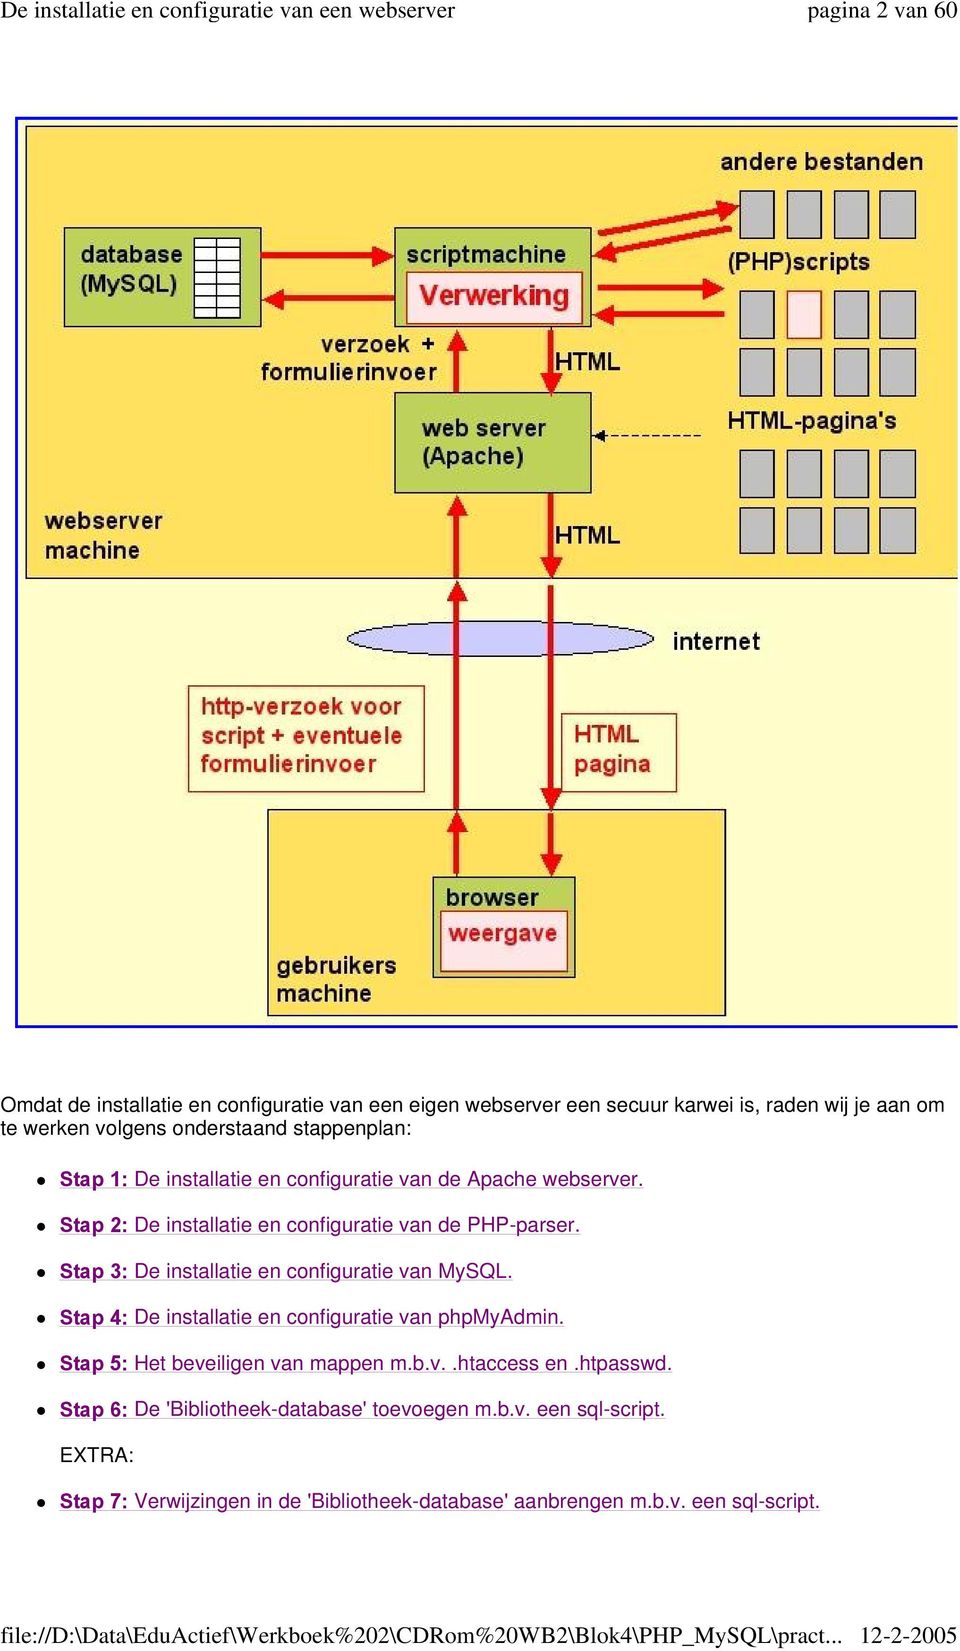 Stap 3: De installatie en configuratie van MySQL. Stap 4: De installatie en configuratie van phpmyadmin. Stap 5: Het beveiligen van mappen m.b.v..htaccess en.